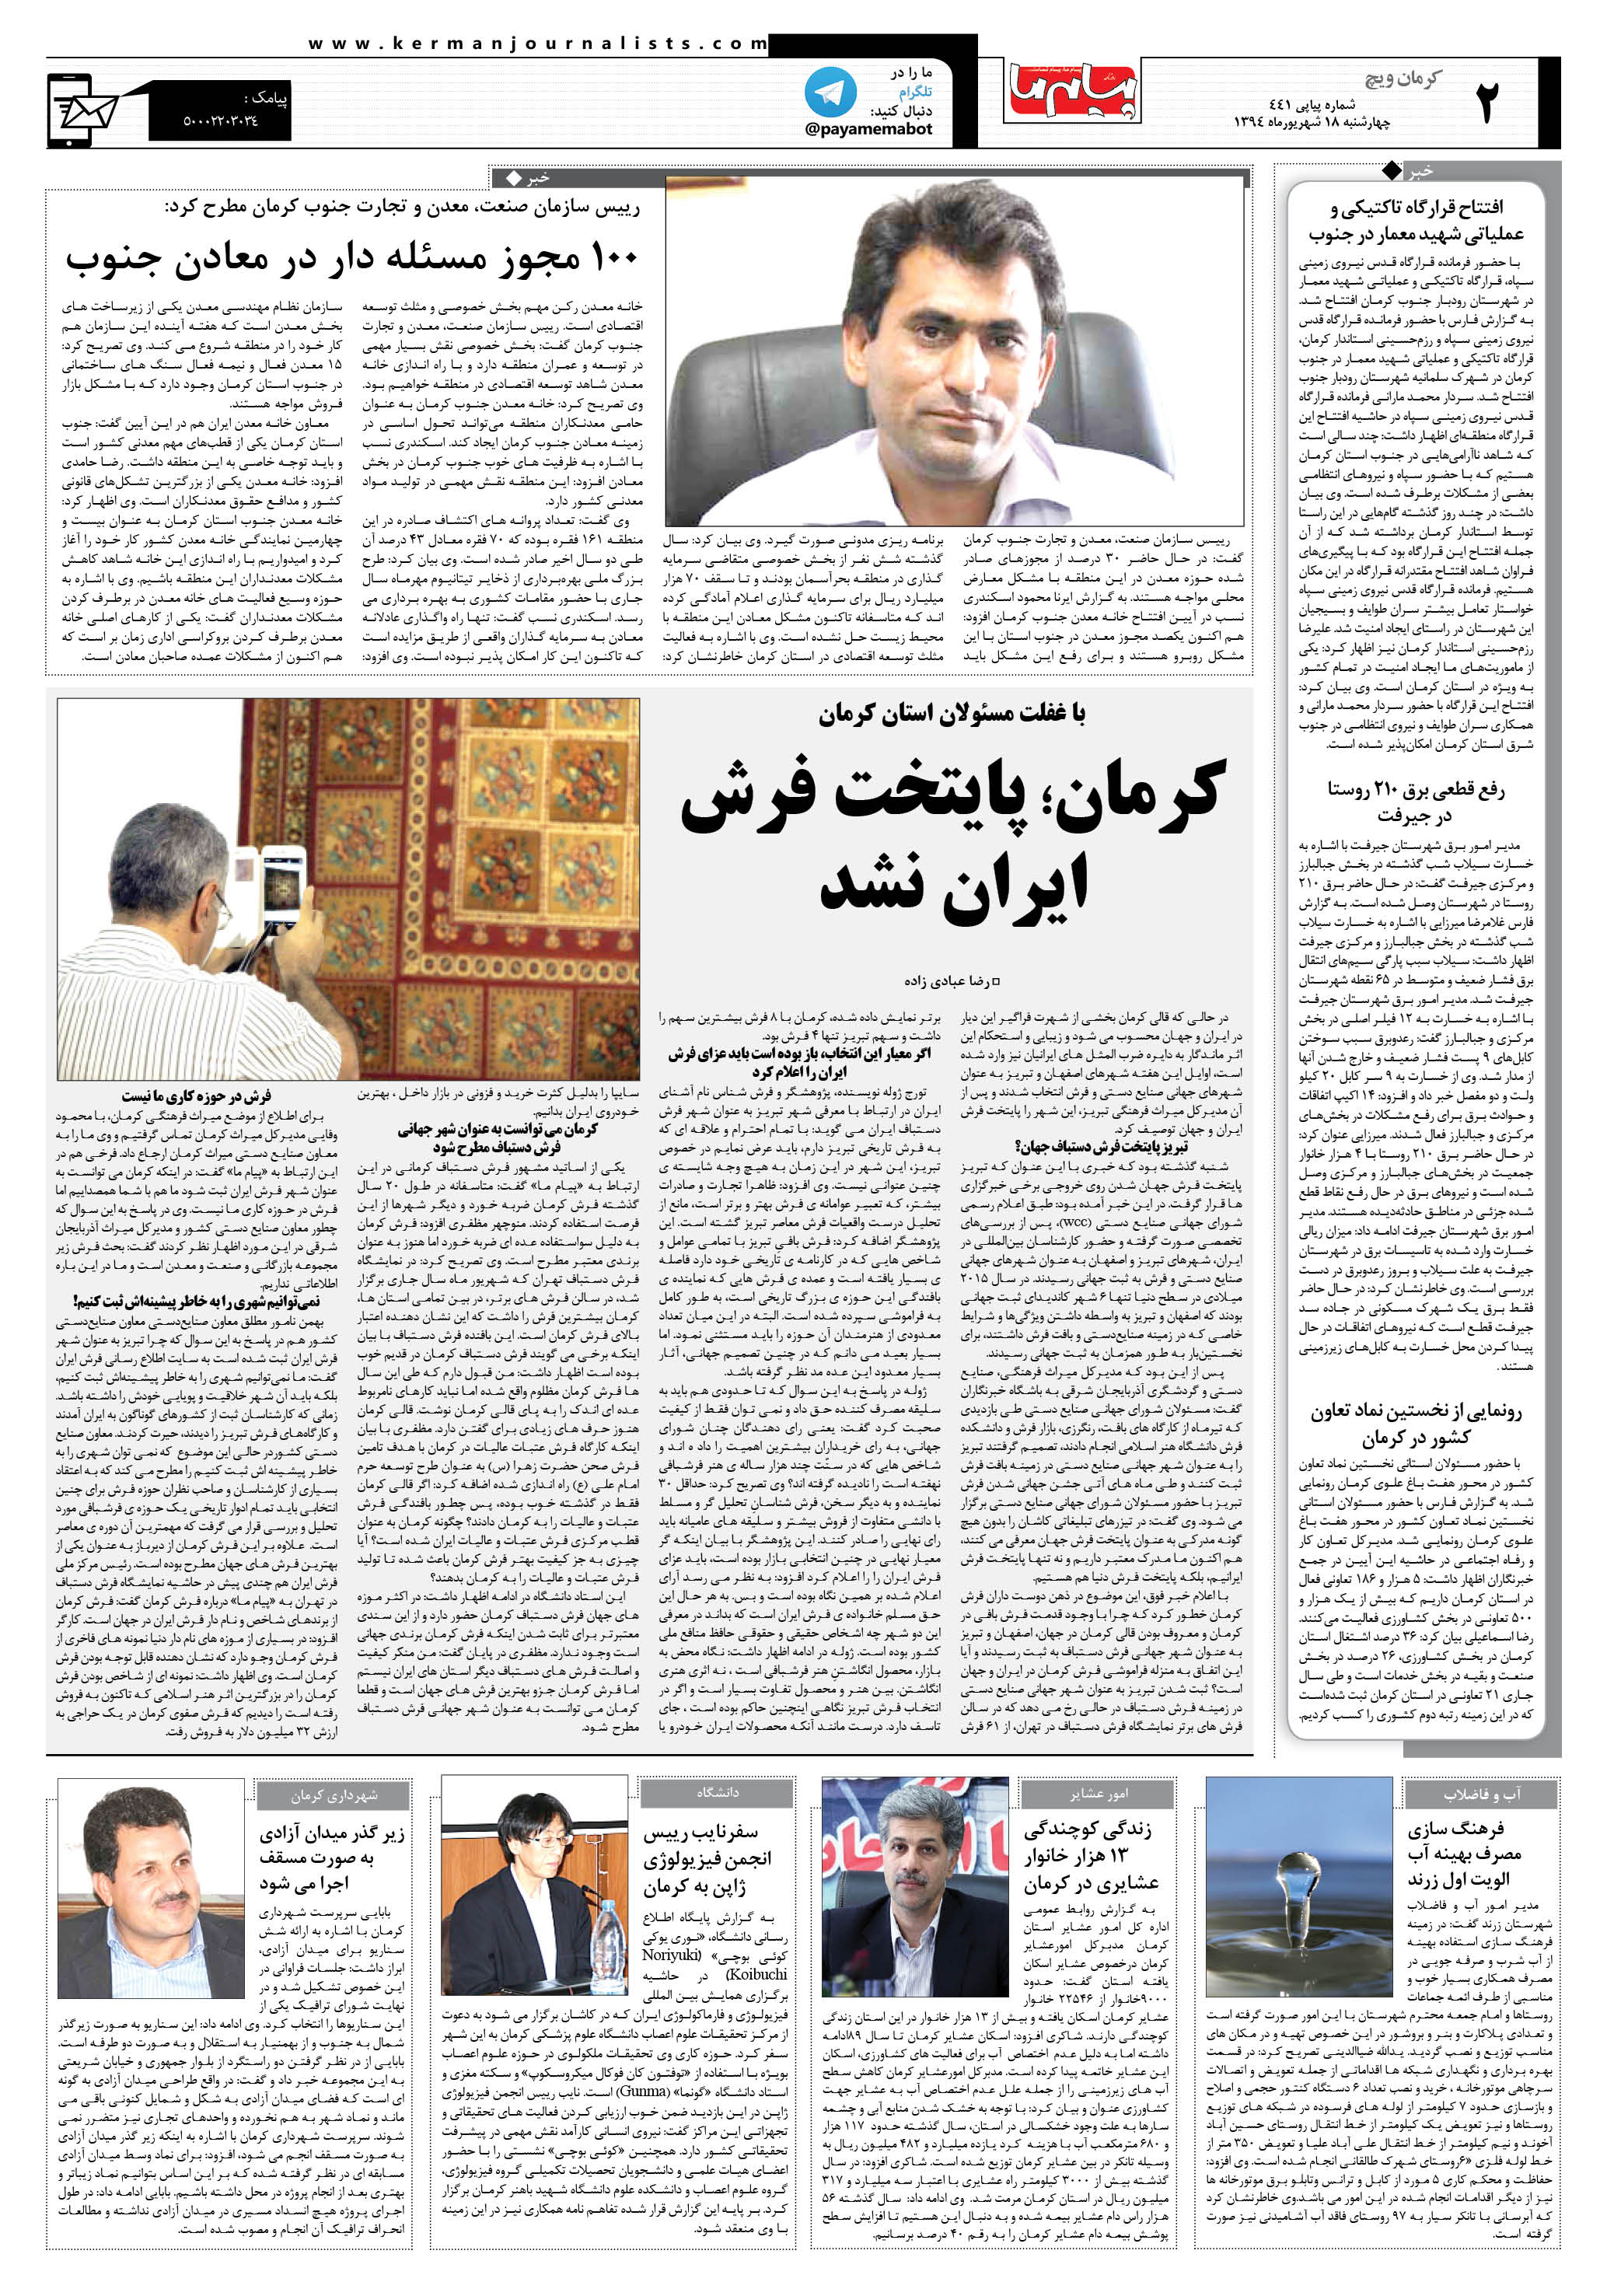 صفحه کرمان ویچ شماره 441 روزنامه پیام ما